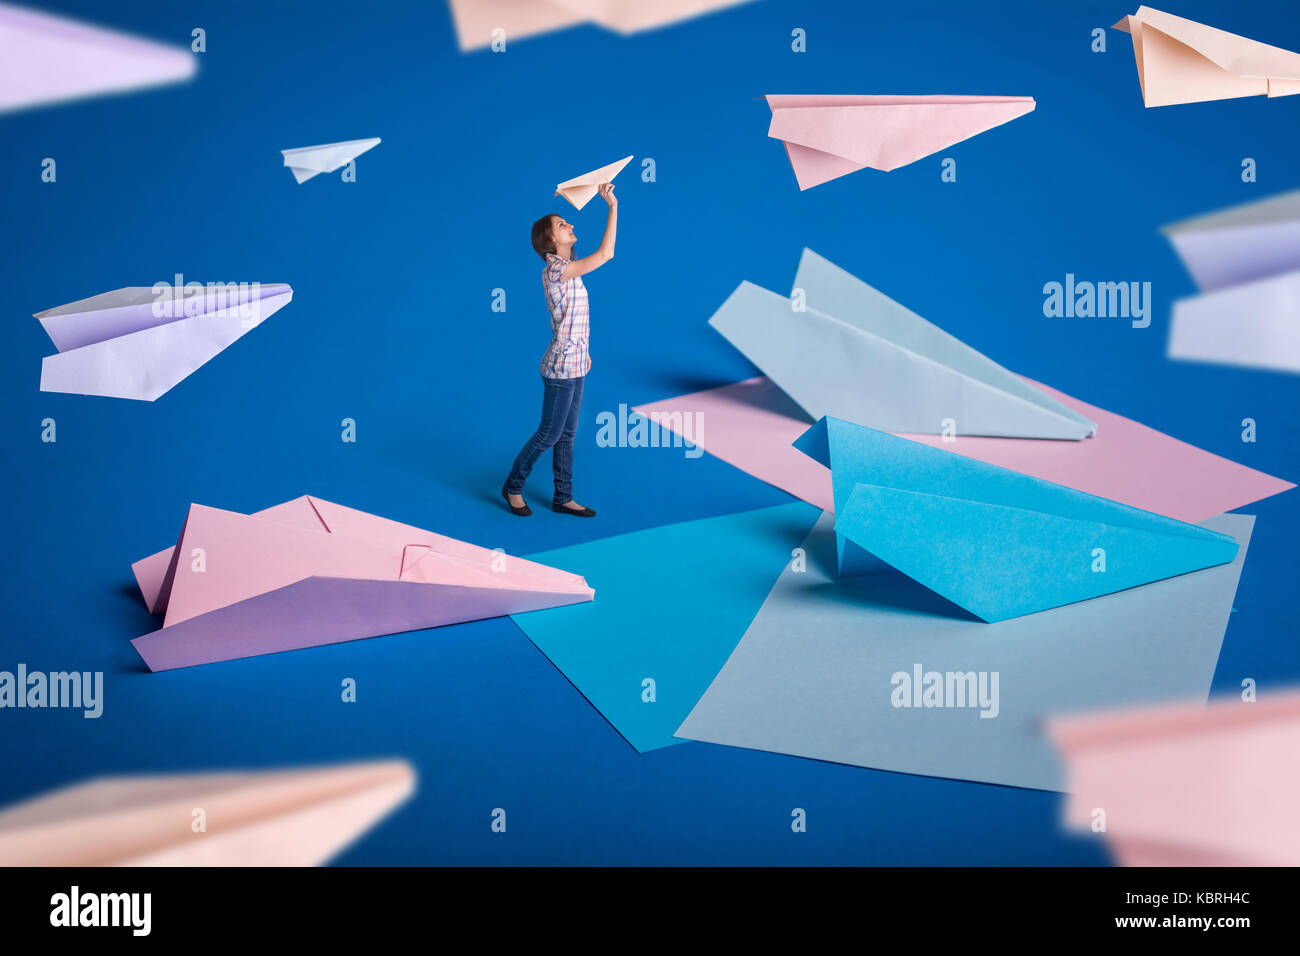 Kreative Surrealismus Design mit Origami Papierflieger. Junges Mädchen lassen Papierflieger. Blau, blau, rosa Origami basteln. Stockfoto